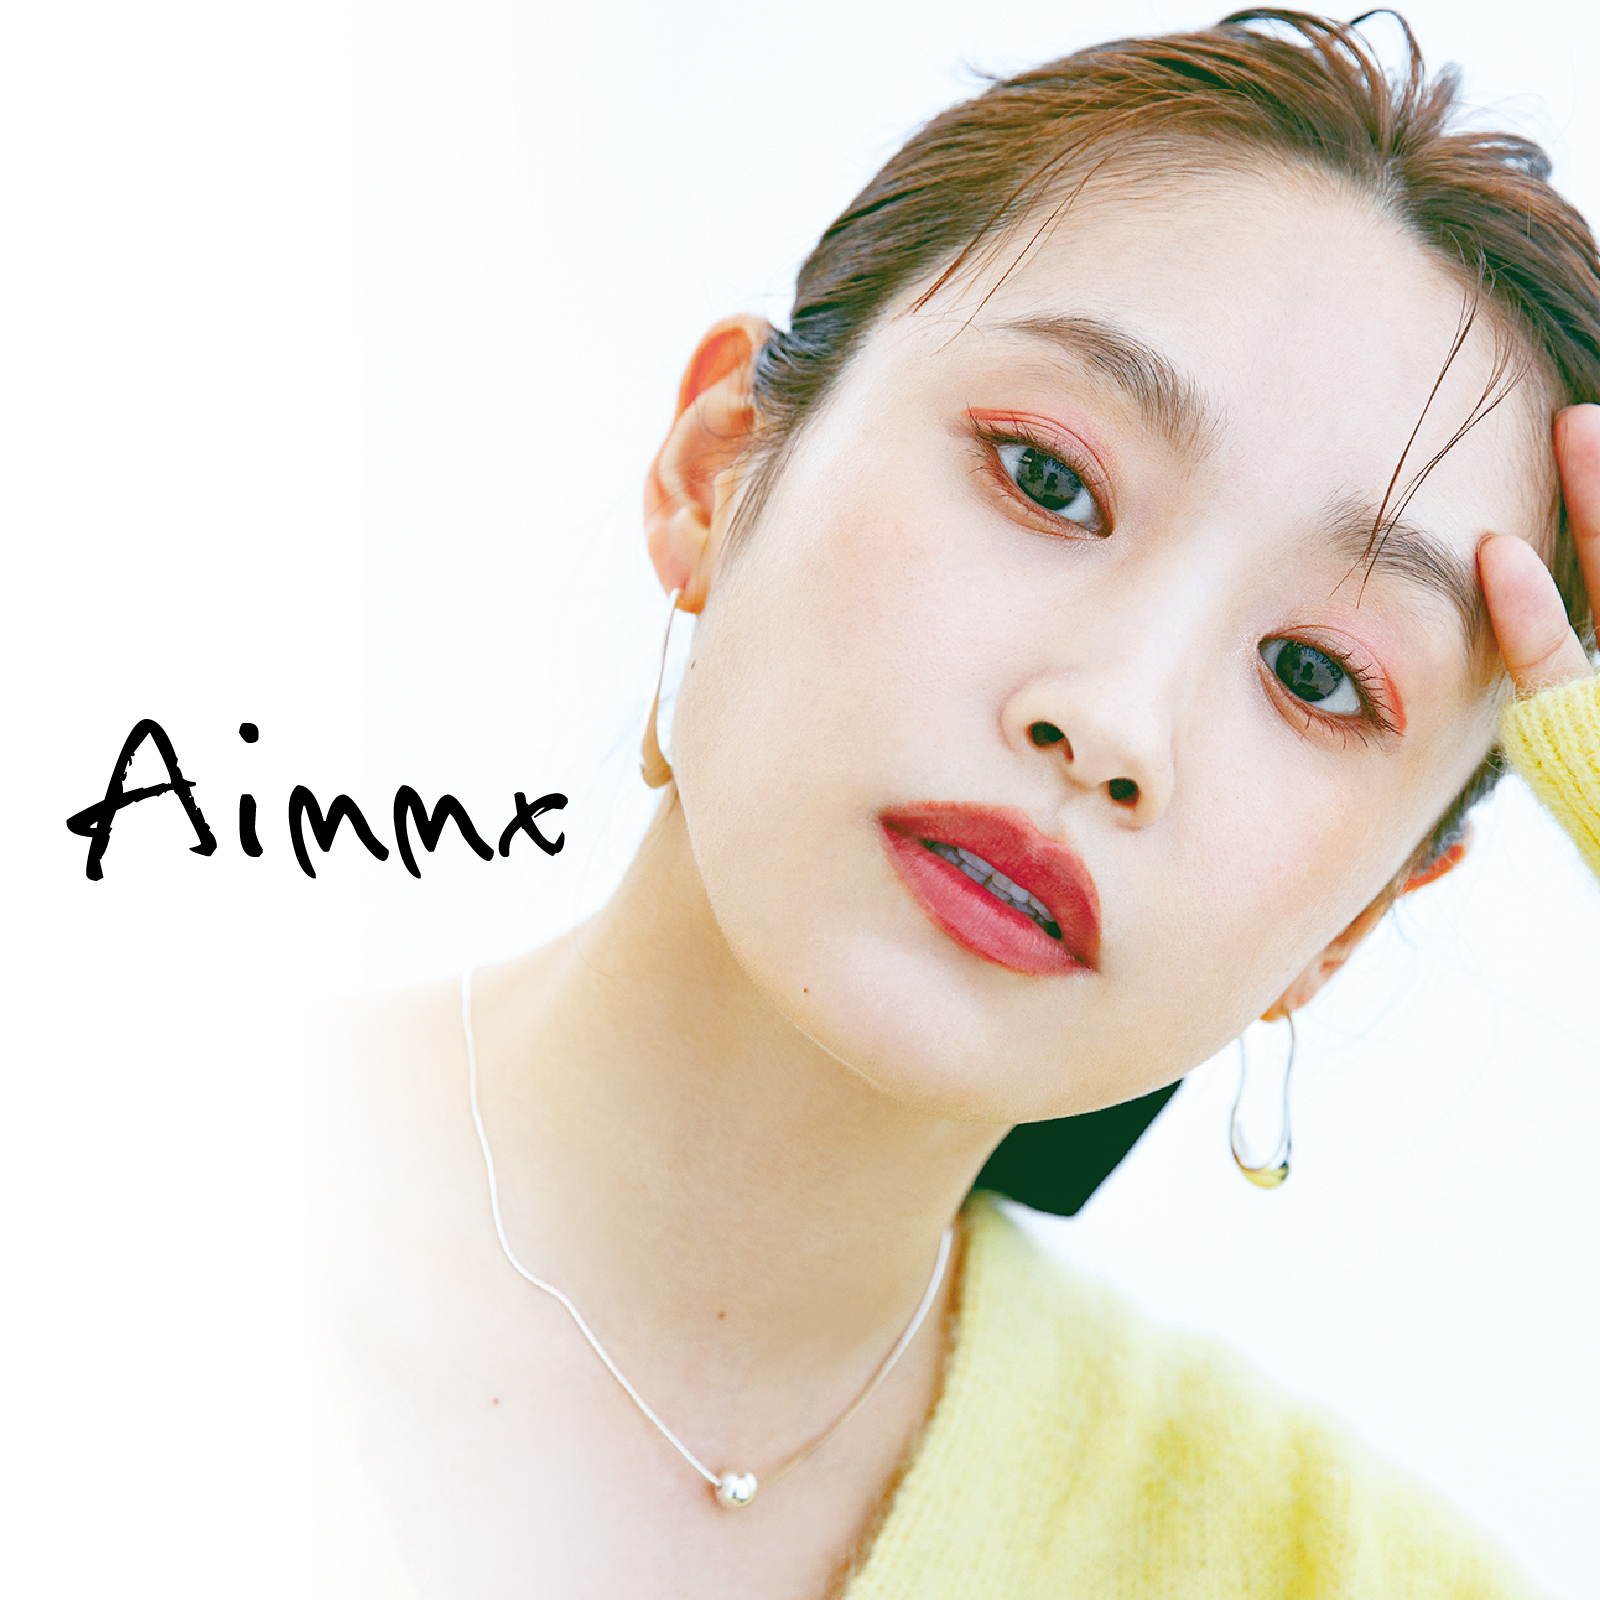 高橋愛プロデュースコスメ『Aimmx』、MimiTV主催のオンラインイベントに9月2日参加決定